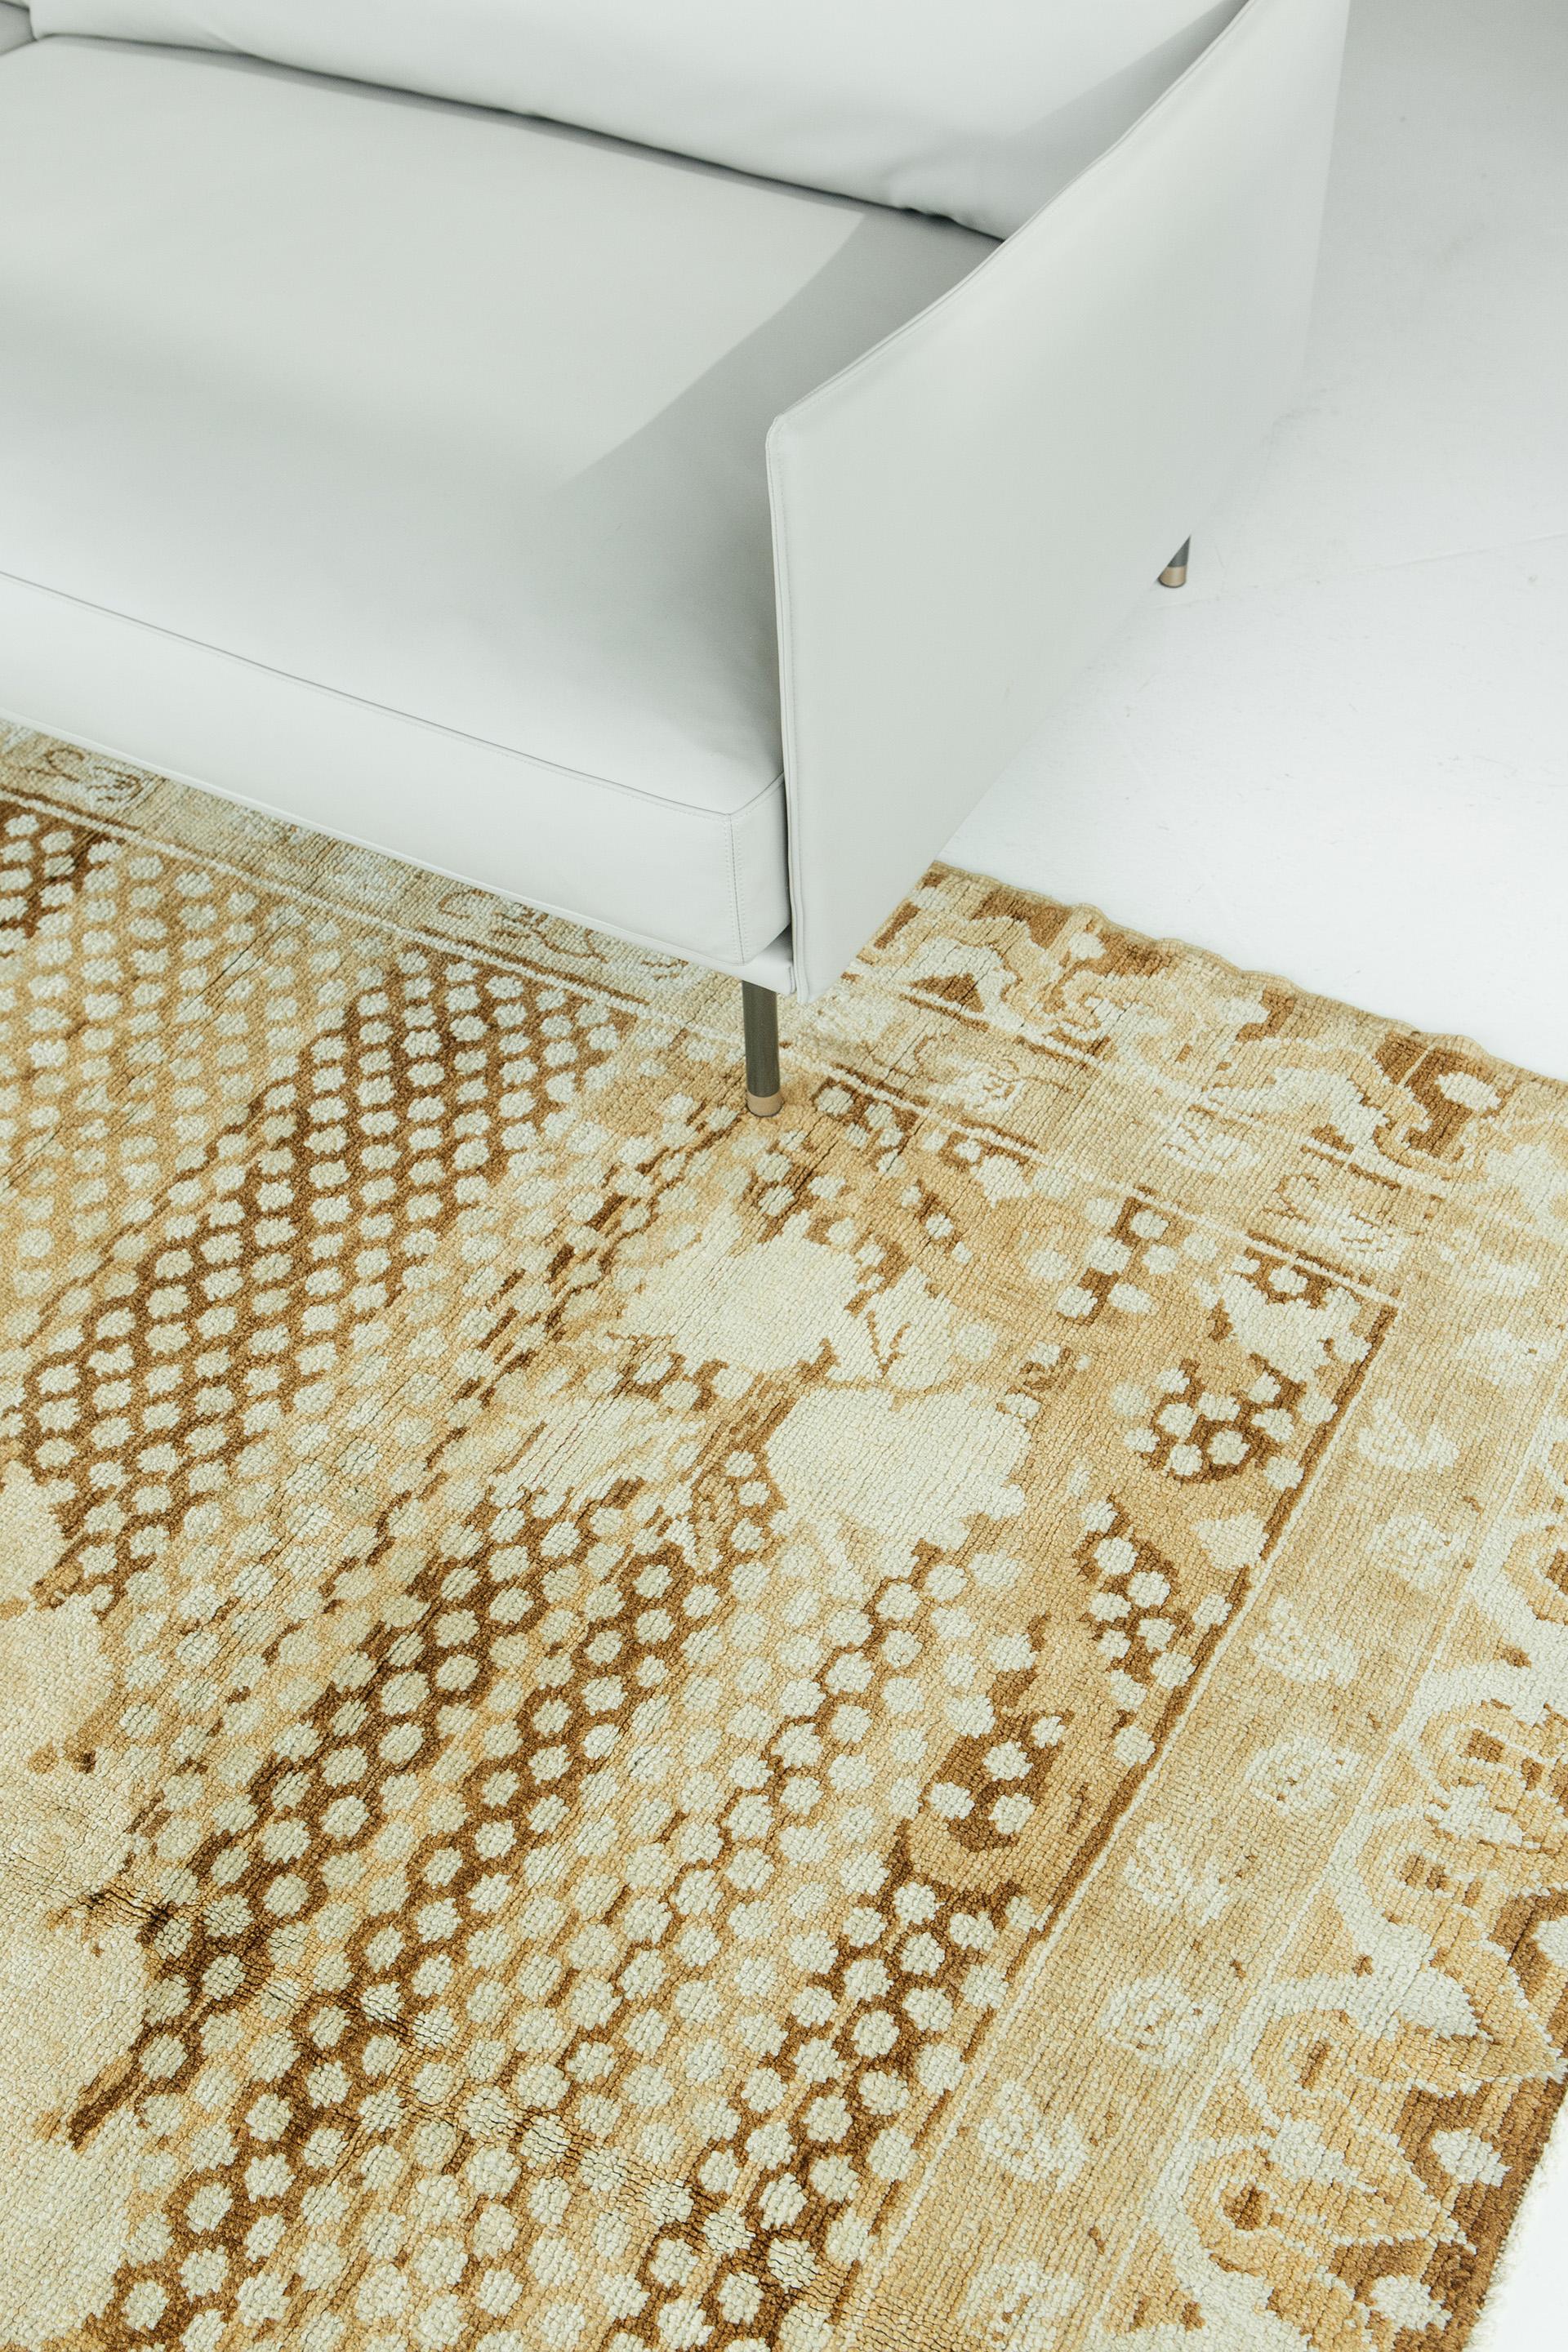 Dieser Kars-Teppich im Vintage-Stil zeichnet sich durch ein zentrales Element mit atemberaubenden Eckdetails und einer skurrilen Bordüre aus. Die Variation von Gold- und Hellbrauntönen zusammen mit den weißen Details verleihen dem Design eine